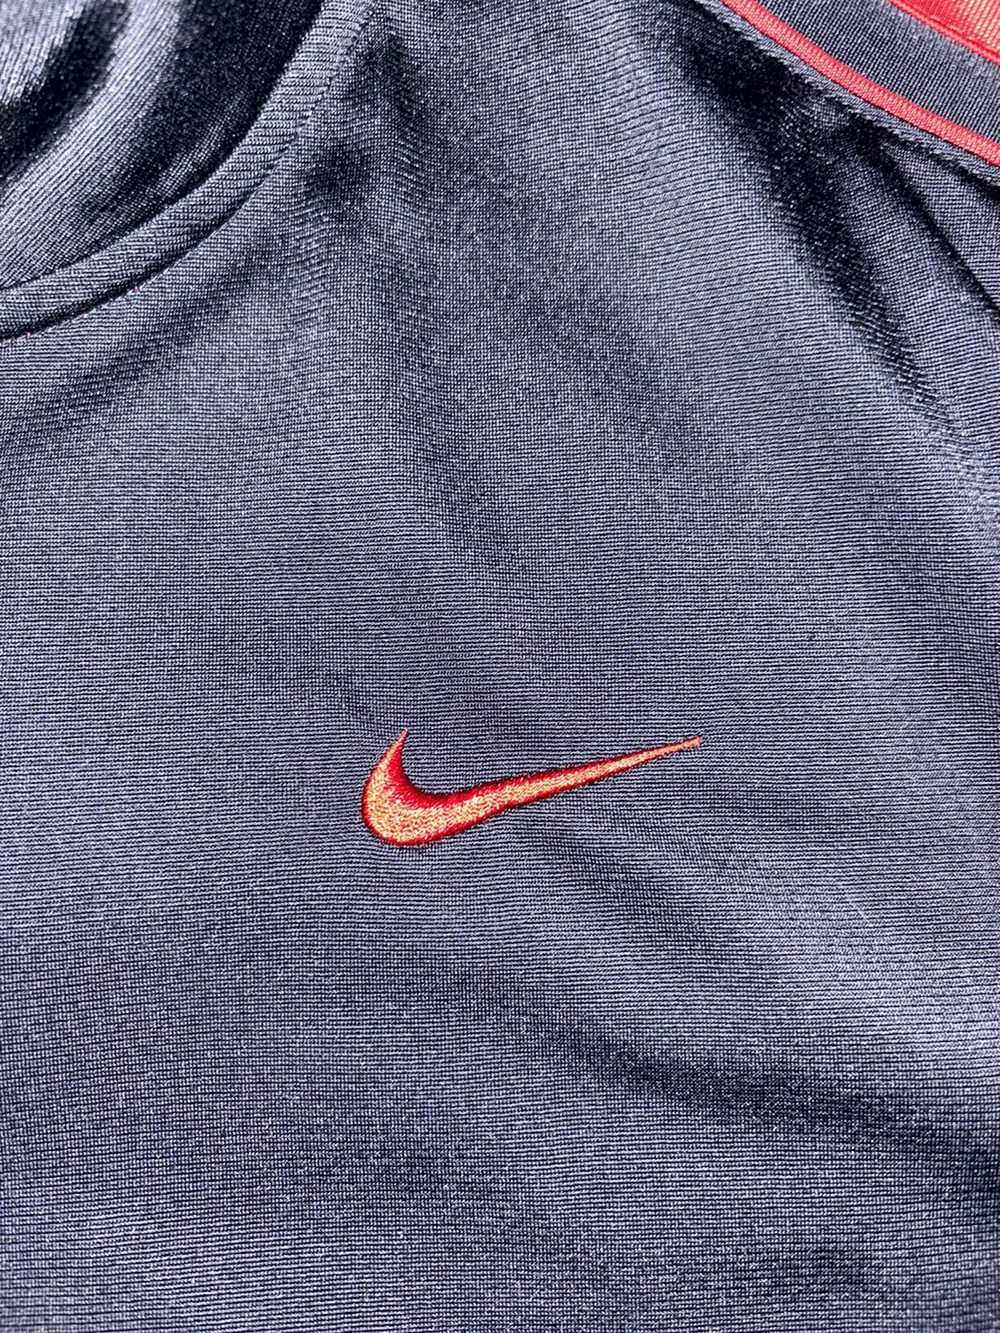 Nike Nike Track Jacket - image 2